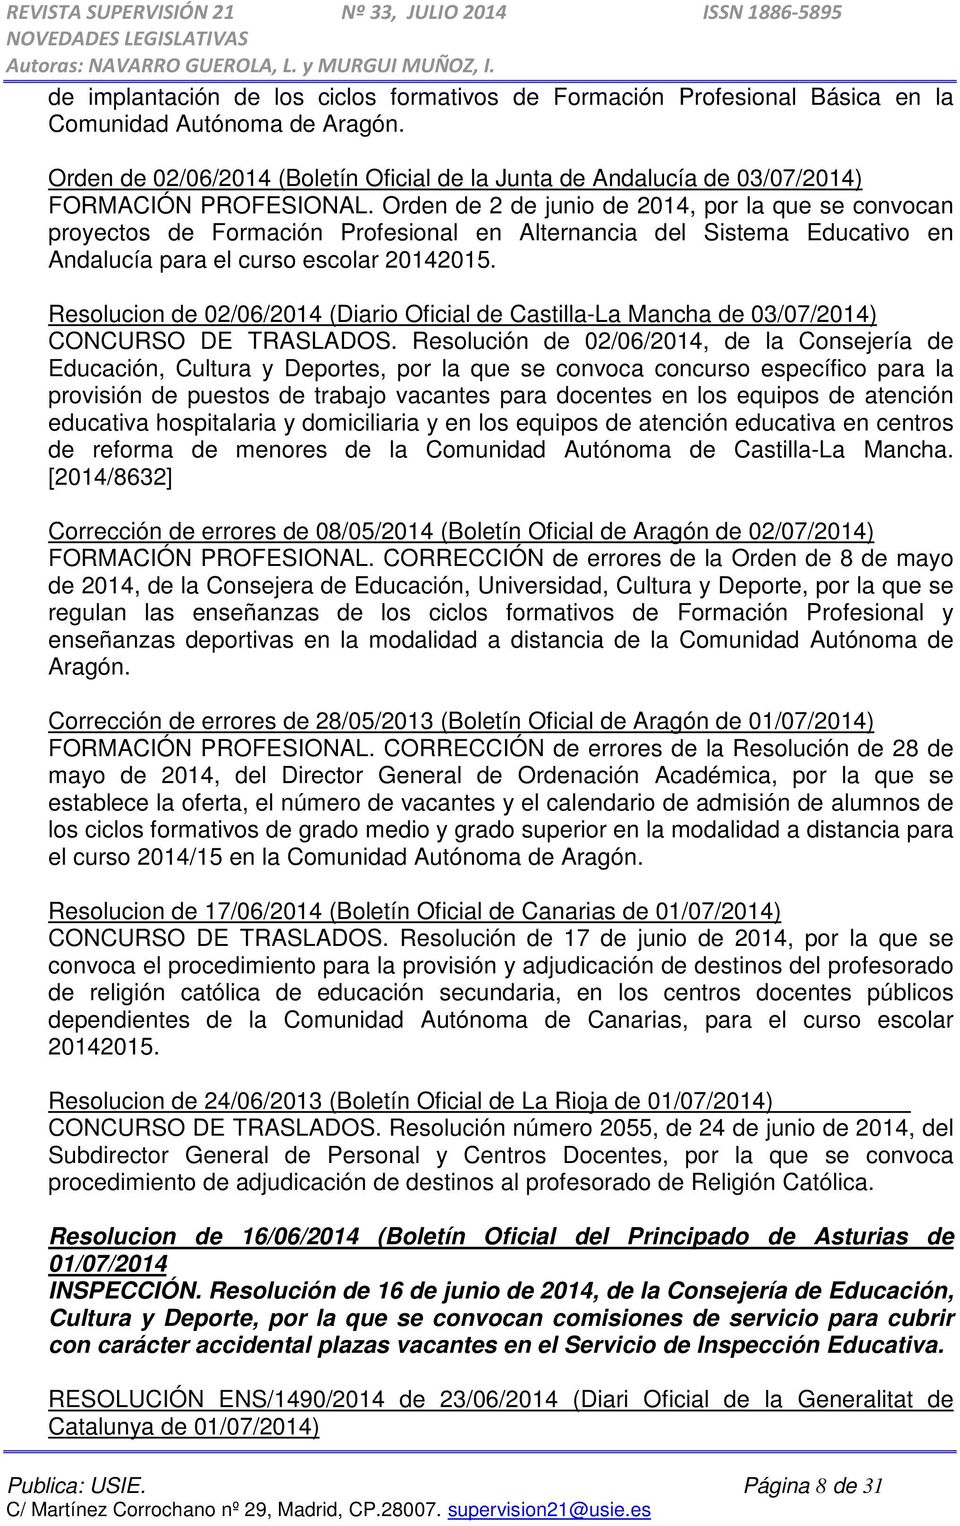 Orden de 2 de junio de 2014, por la que se convocan proyectos de Formación Profesional en Alternancia del Sistema Educativo en Andalucía para el curso escolar 20142015.